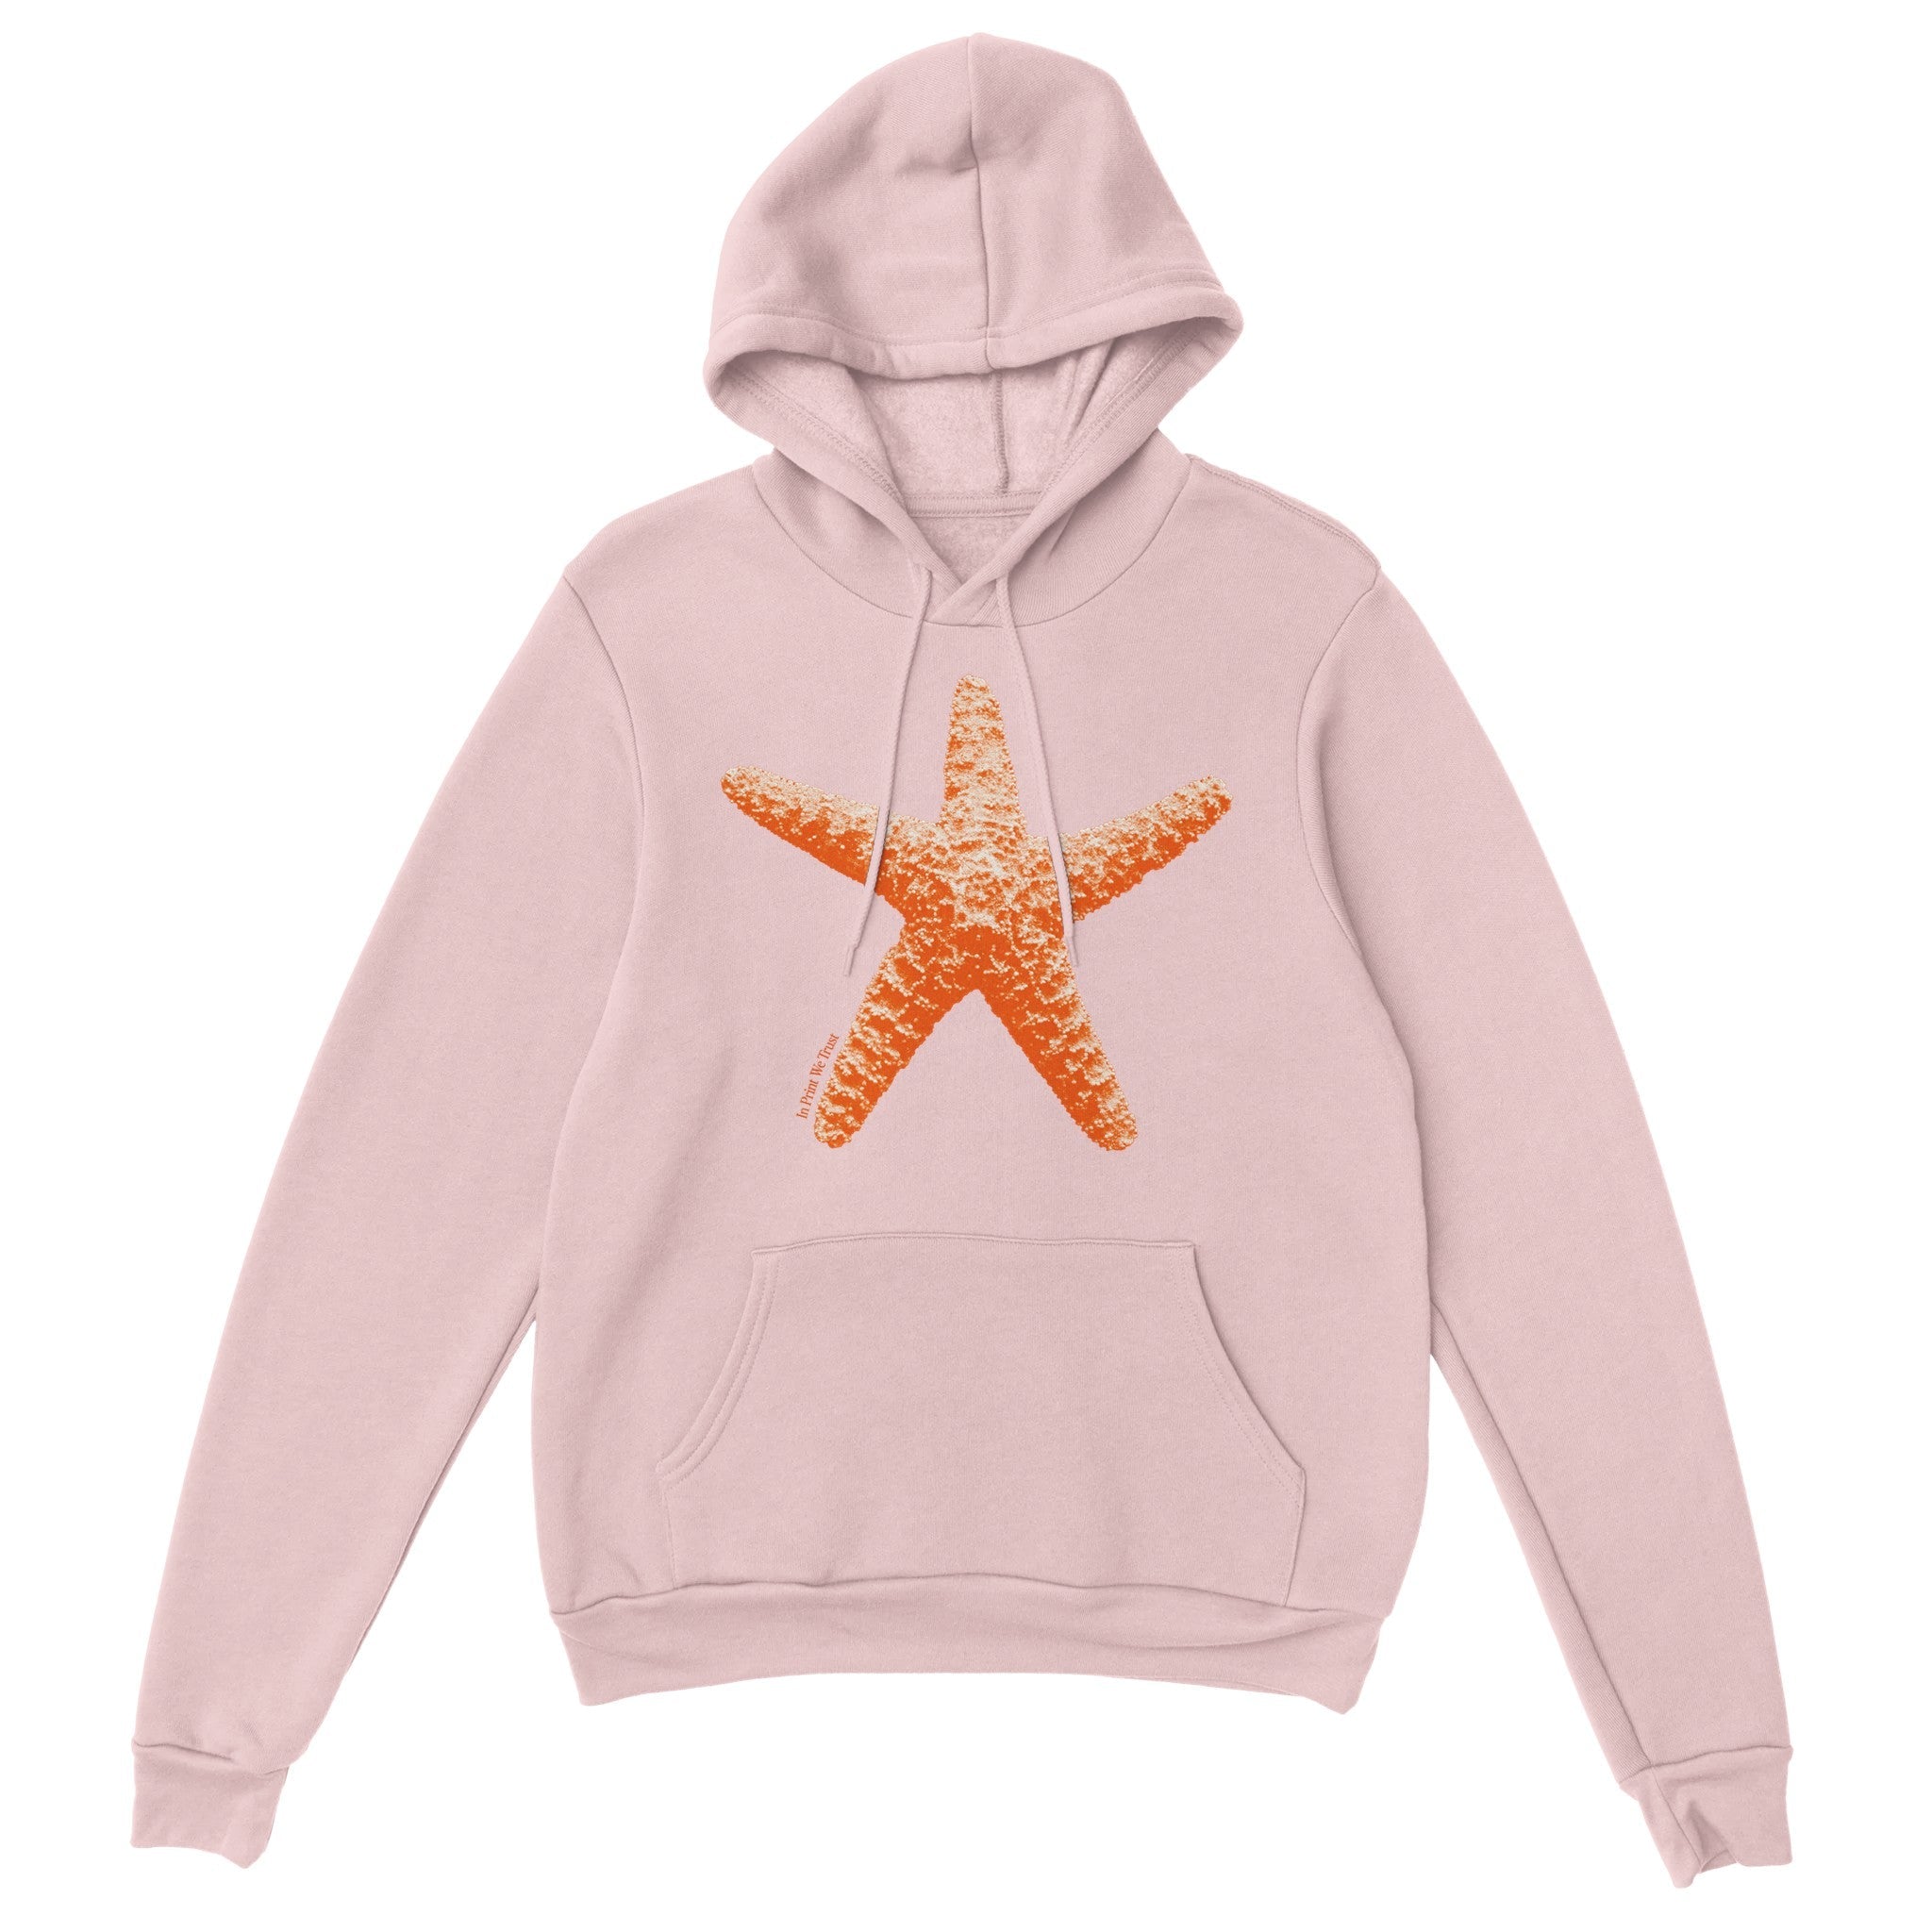 'Starfish' hoodie - In Print We Trust